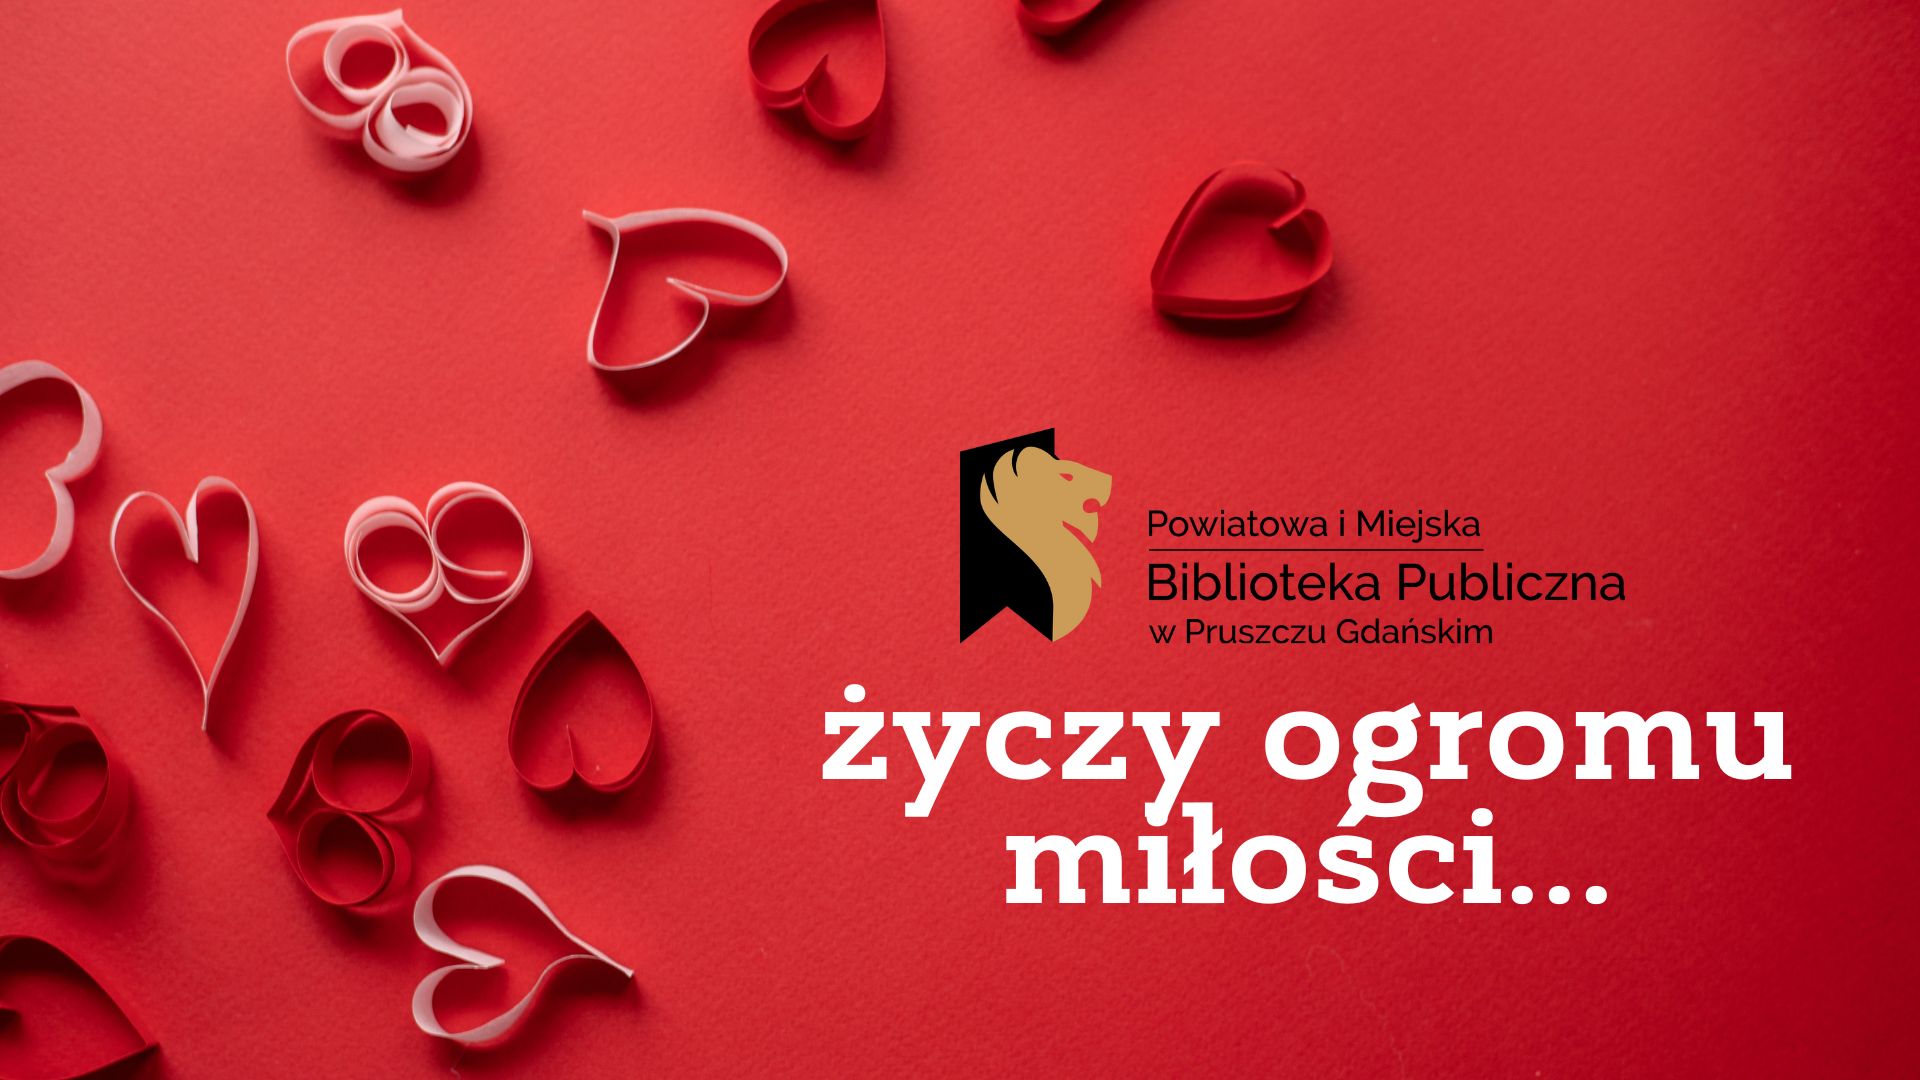 Na czerwonym tle logo biblioteki oraz napis: Powiatowa i Miejska Biblioteka Publiczna w Pruszczu Gdańskim życzy ogromu miłości… Obok białe i czerwone serca z papieru.